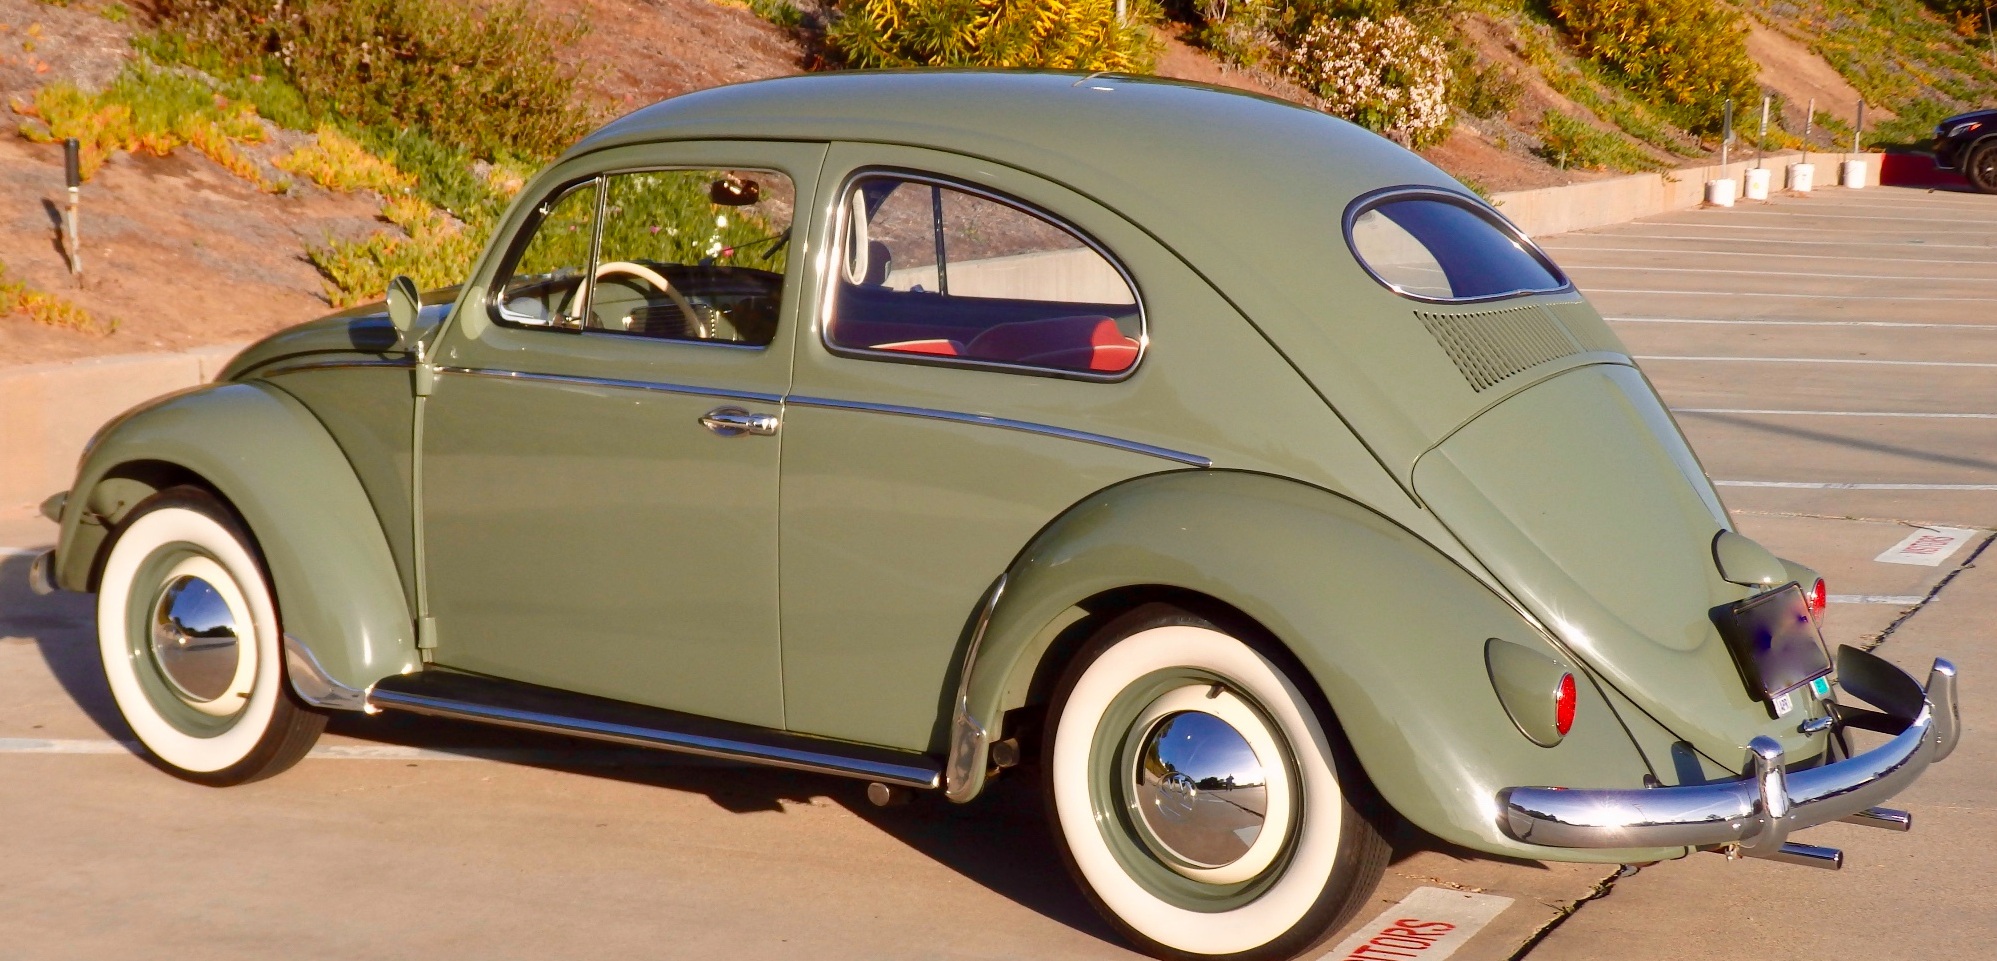 The Amazing Olive Green Volkswagen 1963 Beetle